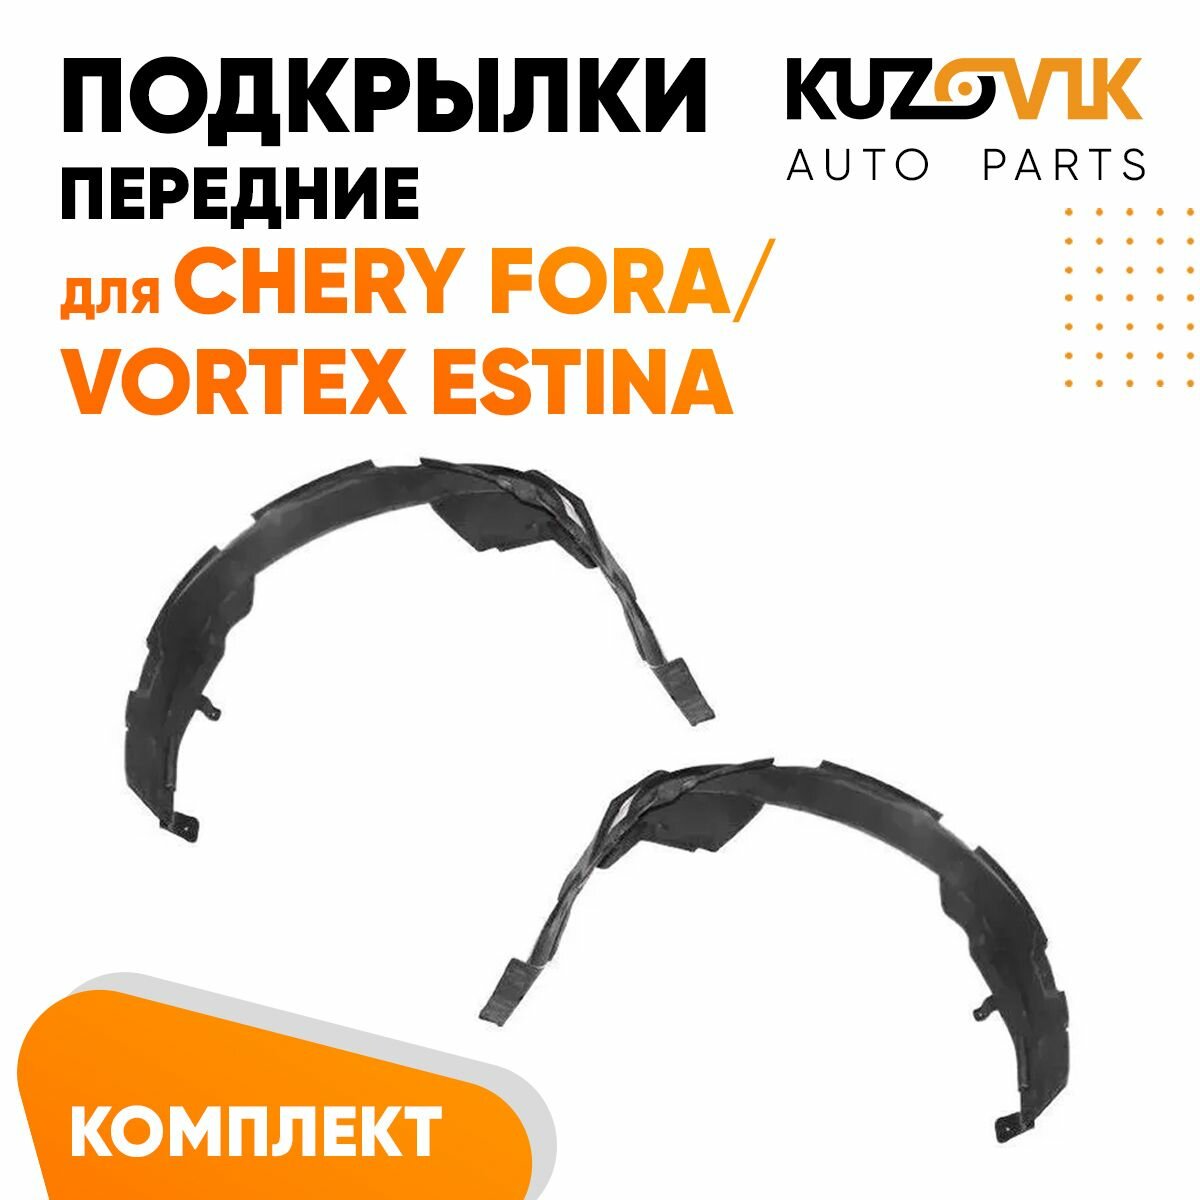 Подкрылок передний левый Chery Fora / Vortex Estina